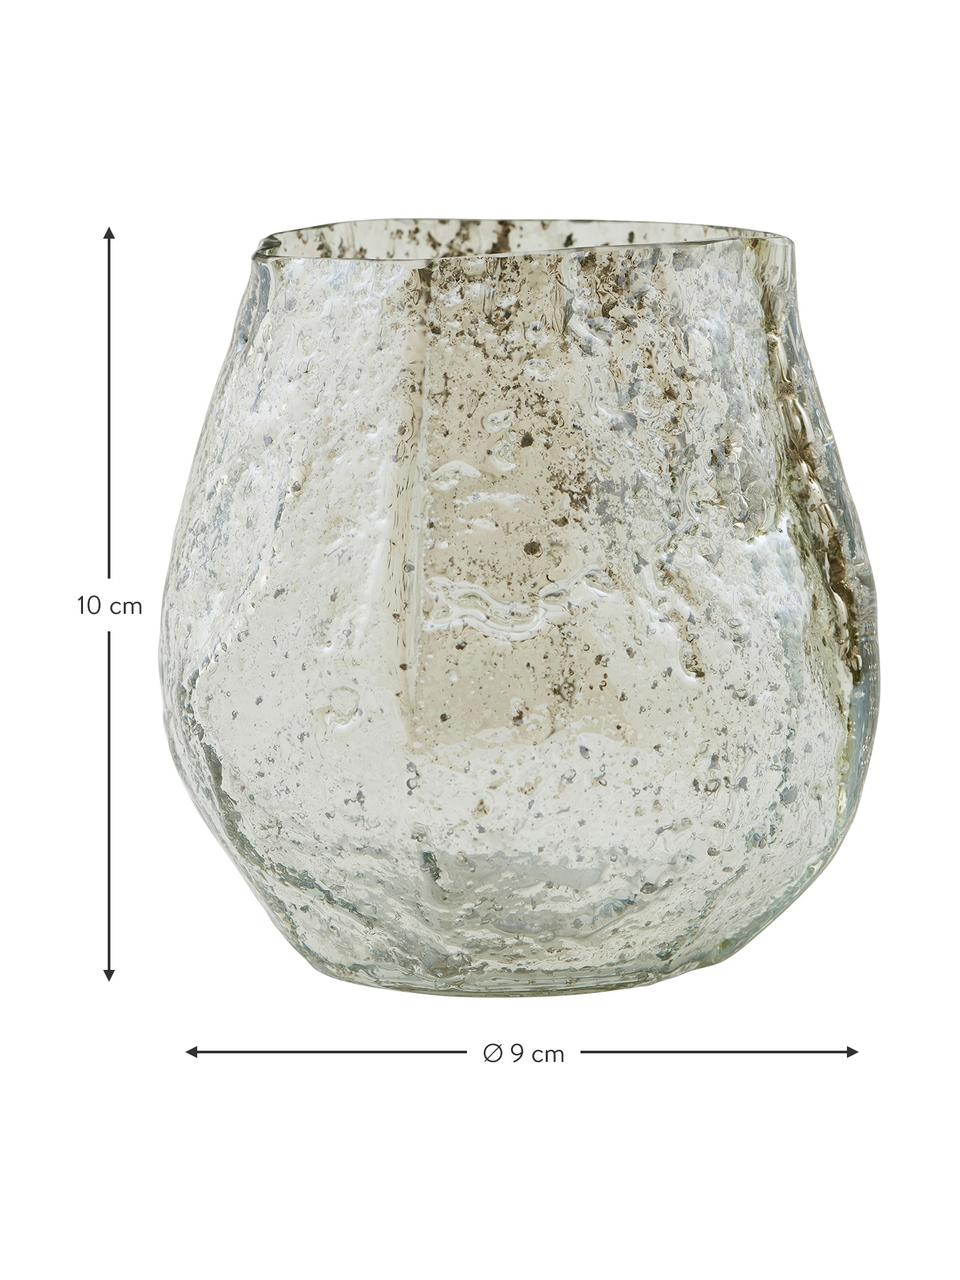 Kleine Glas-Vase Moun in Beige, Glas, Beige mit Grünstich, Ø 9 x H 10 cm